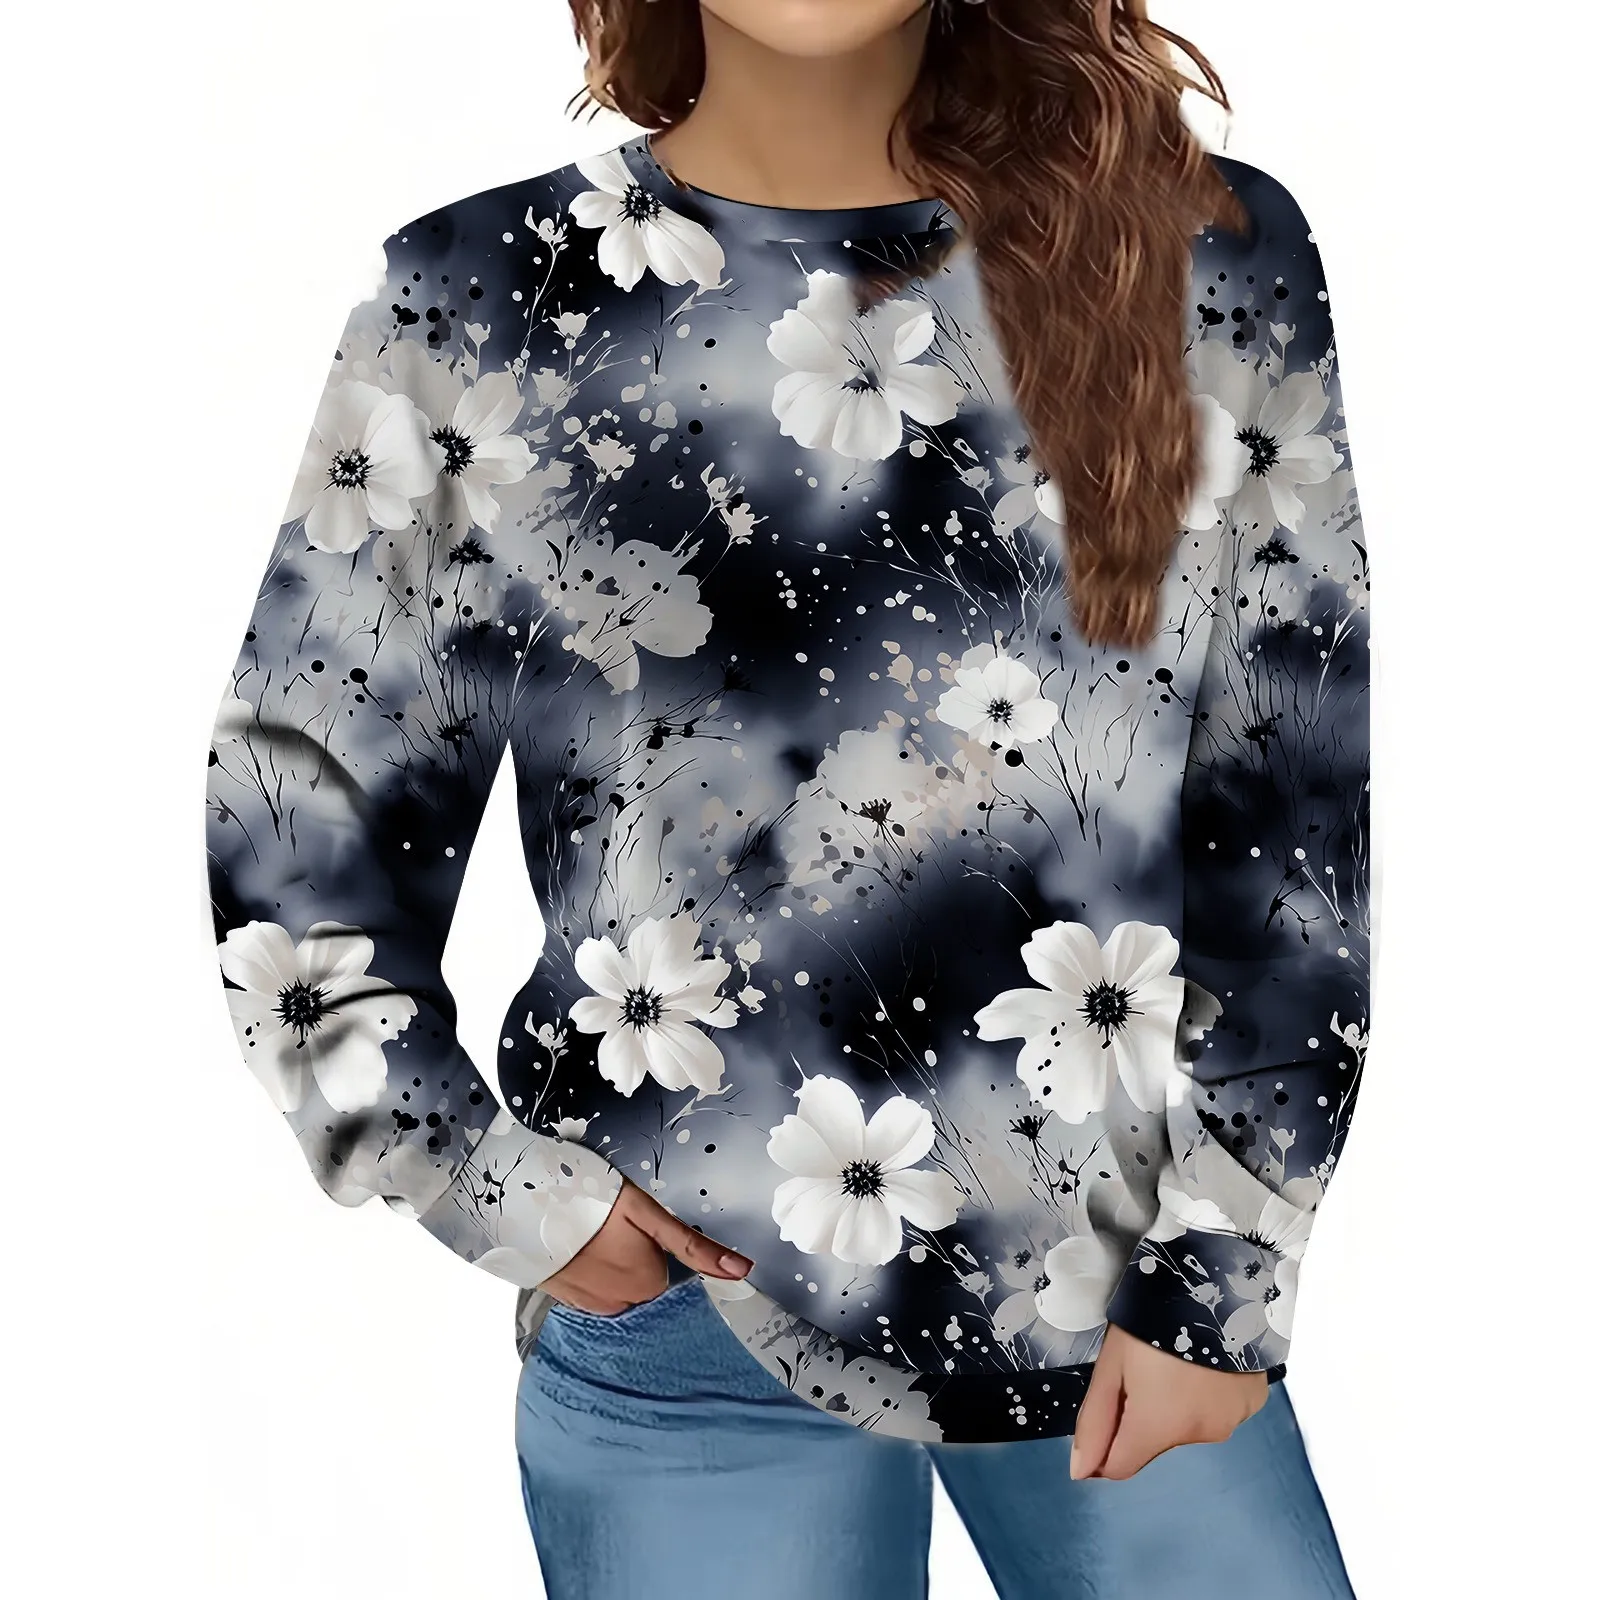 

Свитшот женский с цифровым принтом, пуловер с длинным рукавом, свитшот, Повседневная Уличная одежда, худи на осень